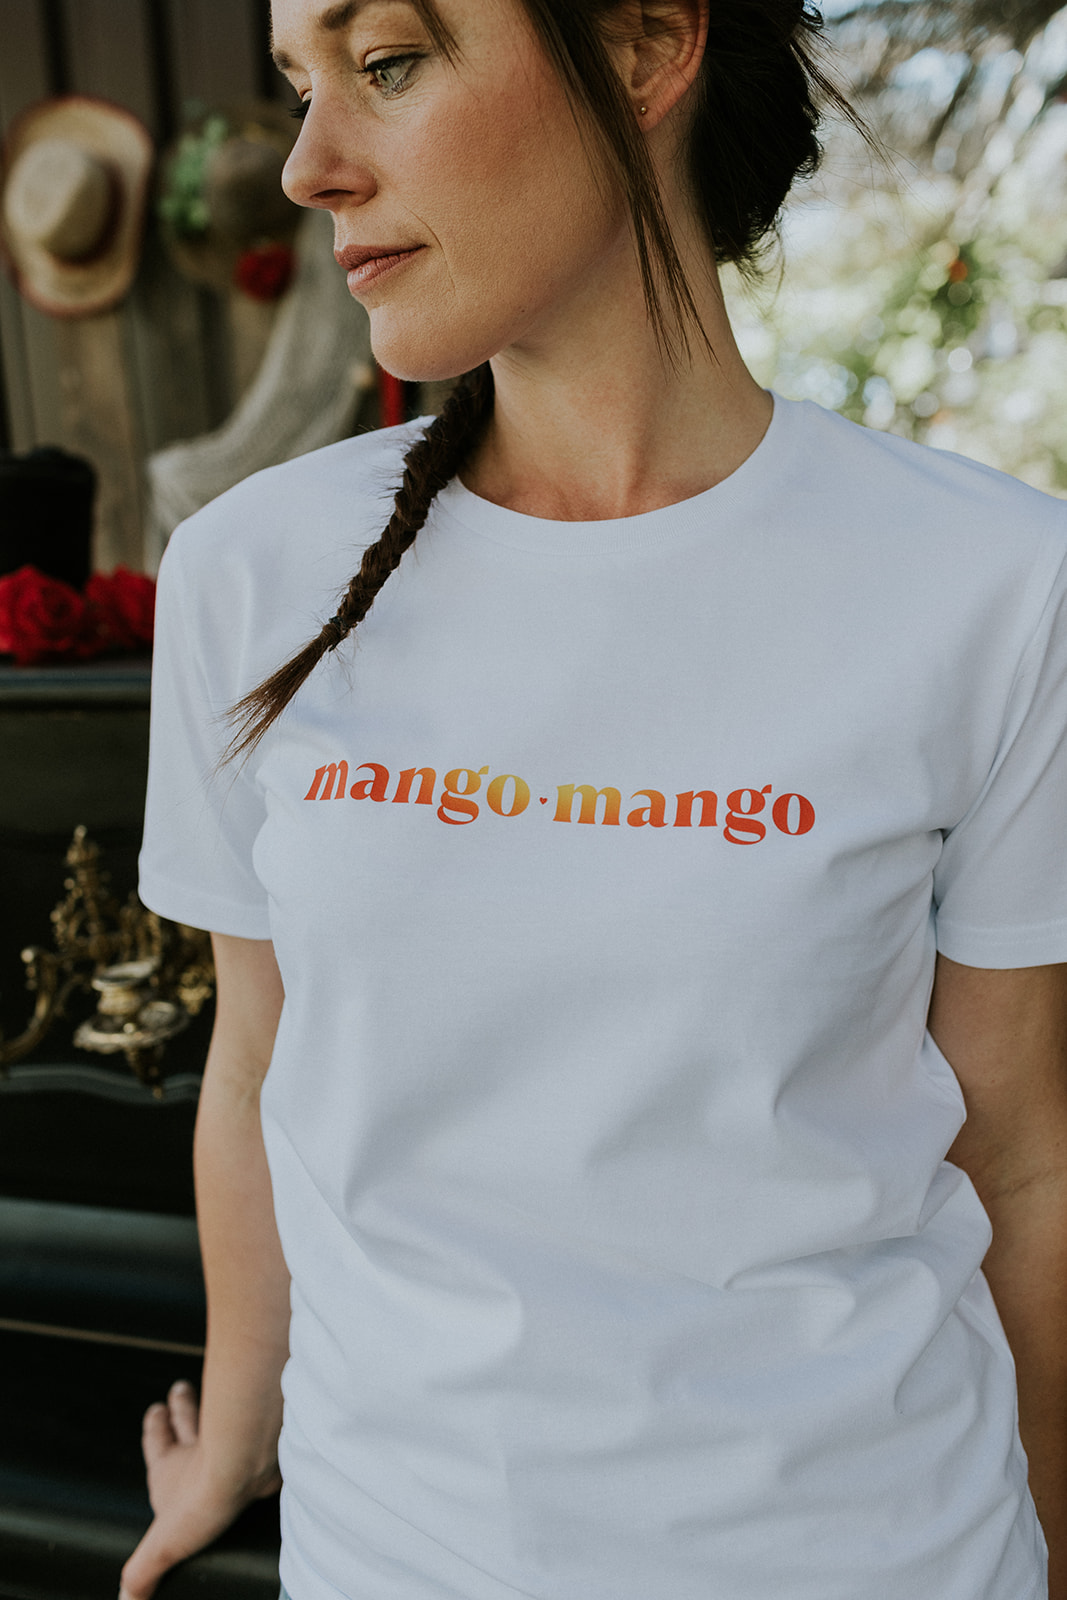 Mango Mango t-shirt van Mangos on Monday